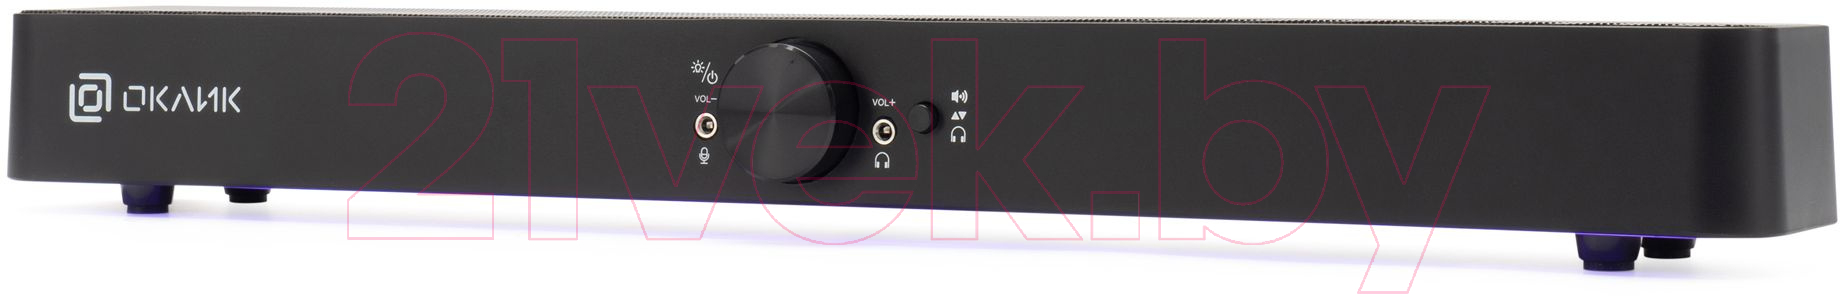 Звуковая панель (саундбар) Oklick OK-534S